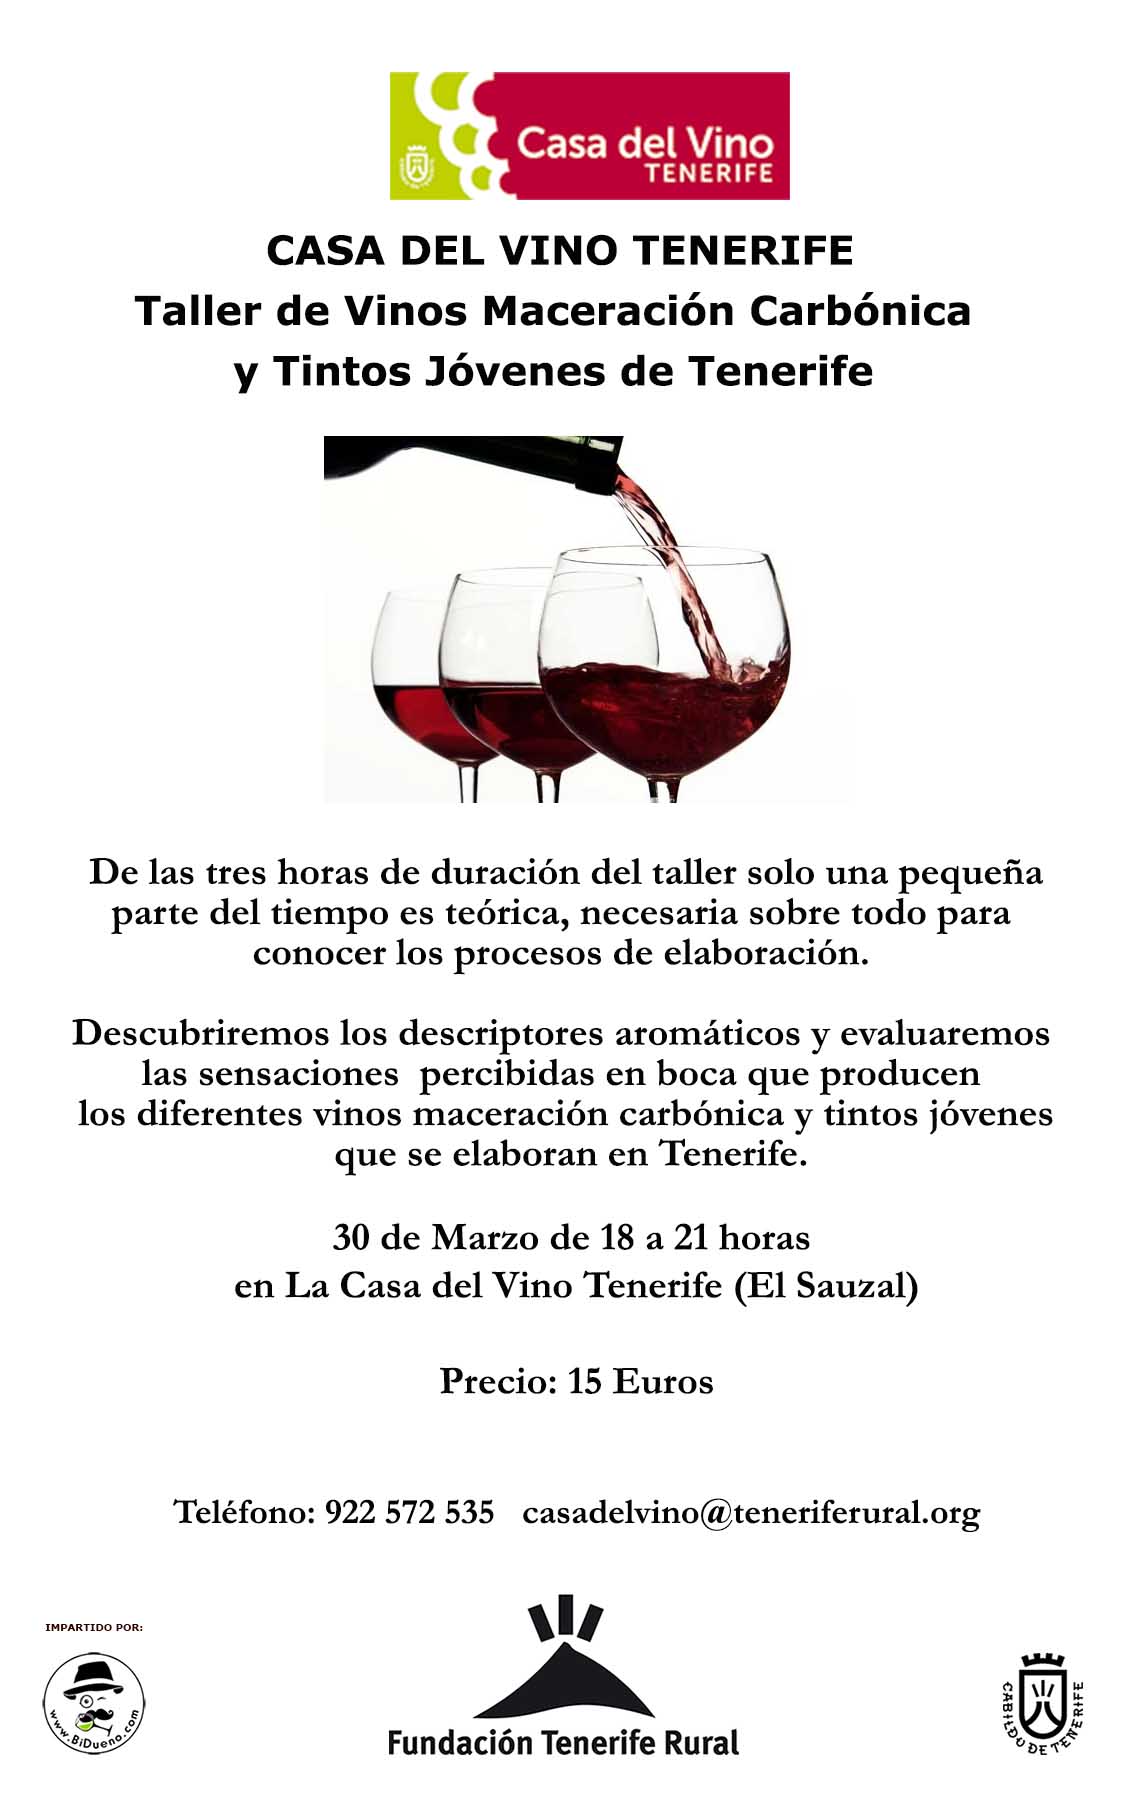 Taller de vinos maceración carbónica y tintos jóvenes. Casa del Vino Tenerife